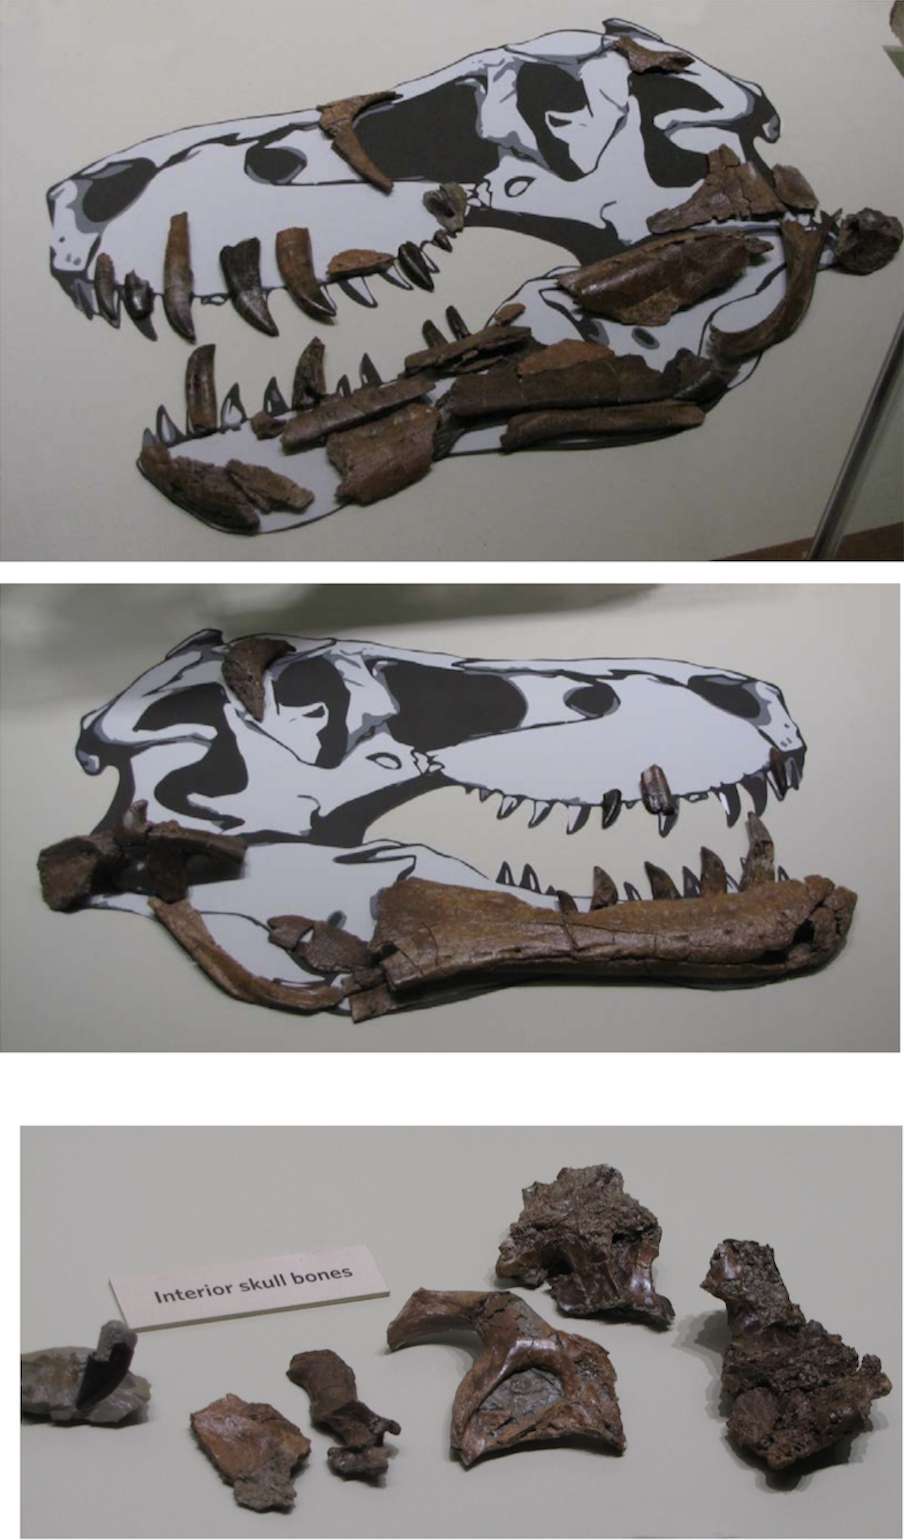 Любой желающий может купить остатки молодого тираннозавра, правда почти за $3 миллиона - фото 429762